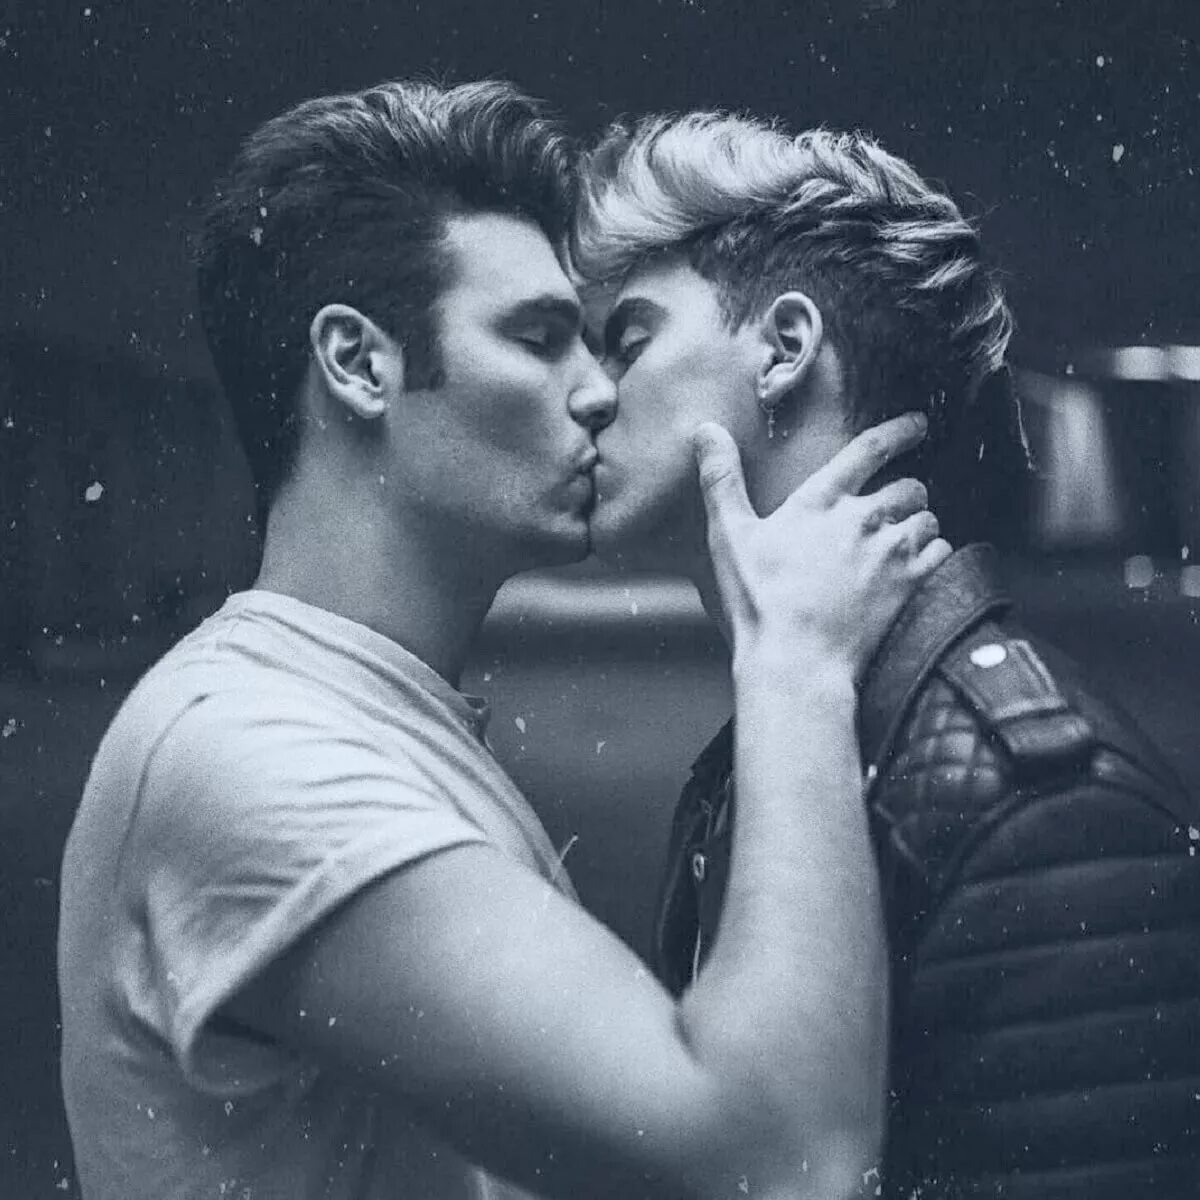 Целоваться друг с другом парня. Парни целуются. Поцелуй двух мужчин. Красивый поцелуй парней. Красивые парни целуются.